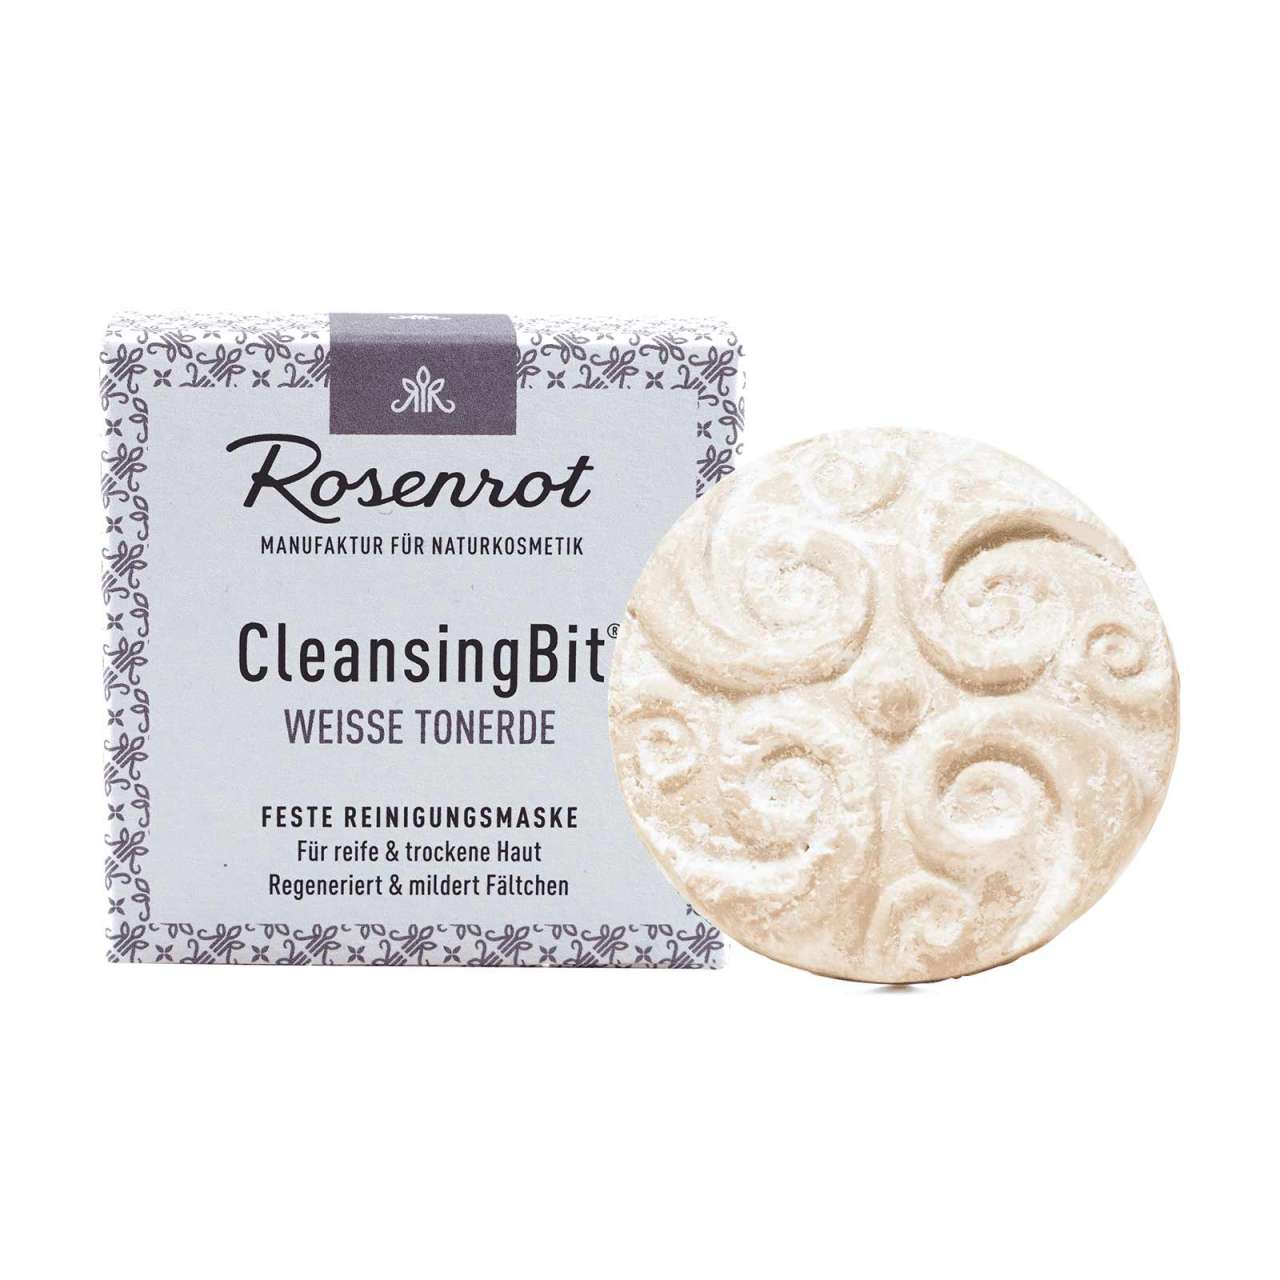 Rosenrot Cleansing Bit - Feste Reinigungsmaske für Gesicht